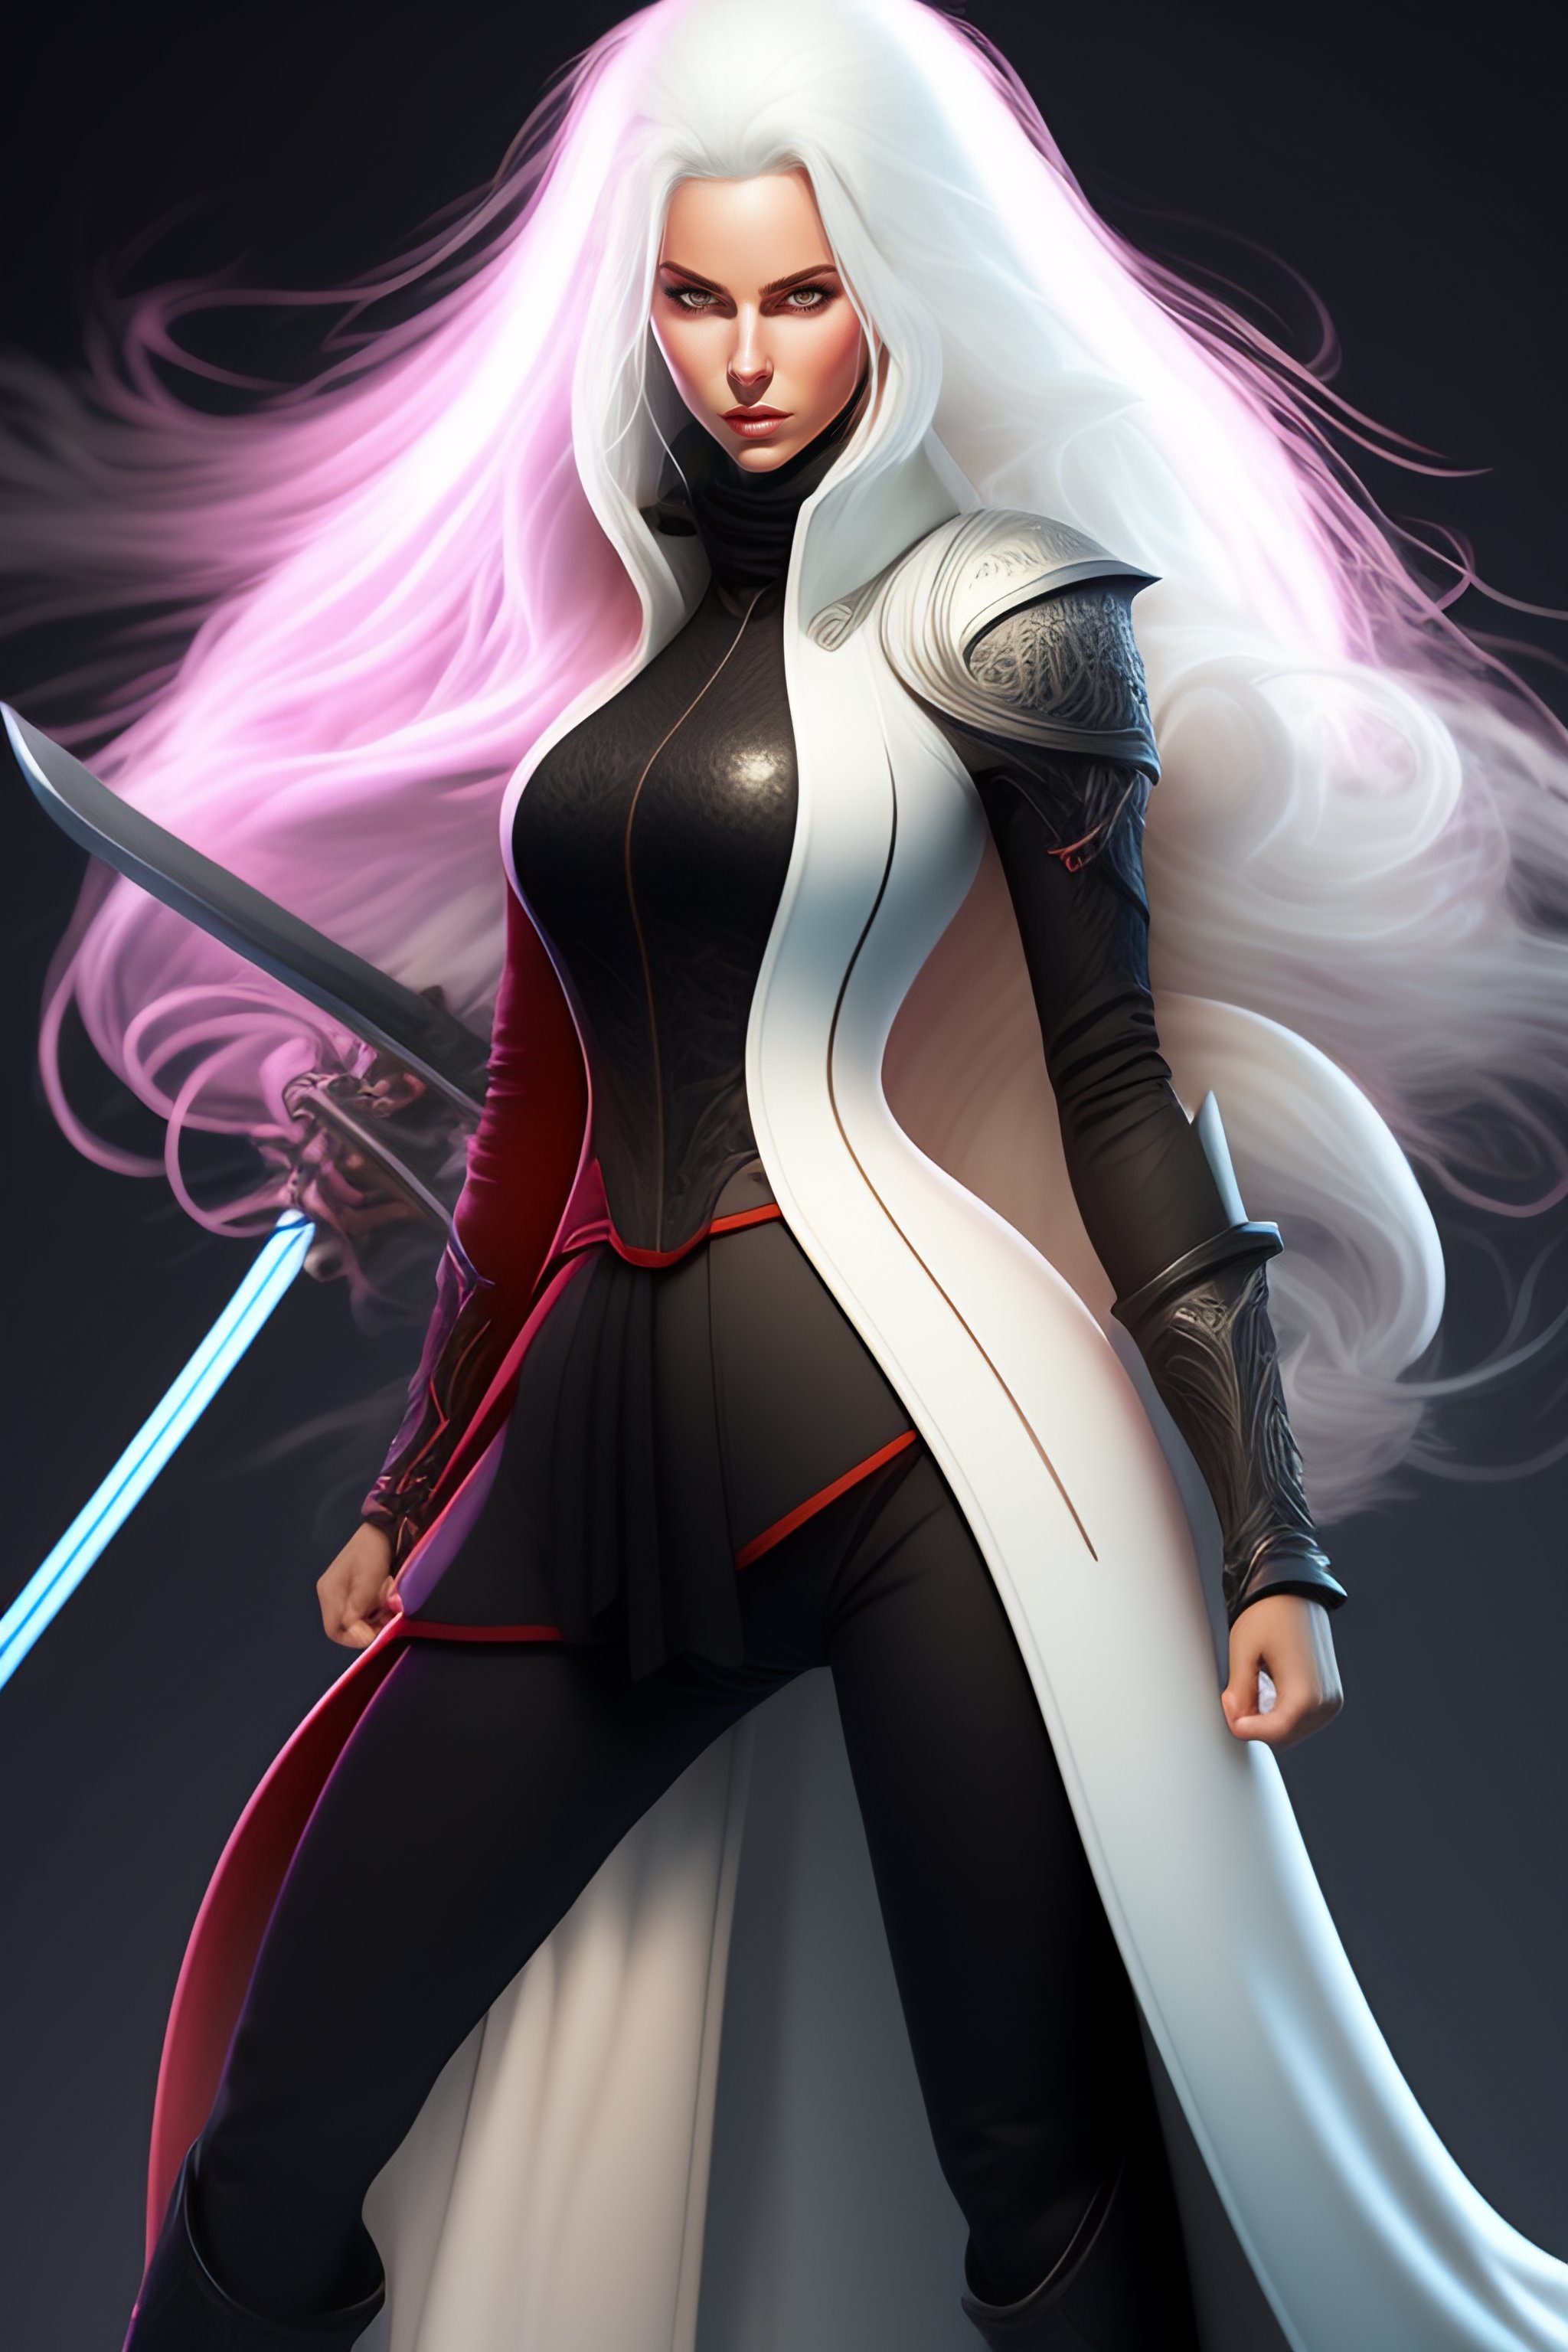 Lexica - Full body portrait of female swordsman, long white hair